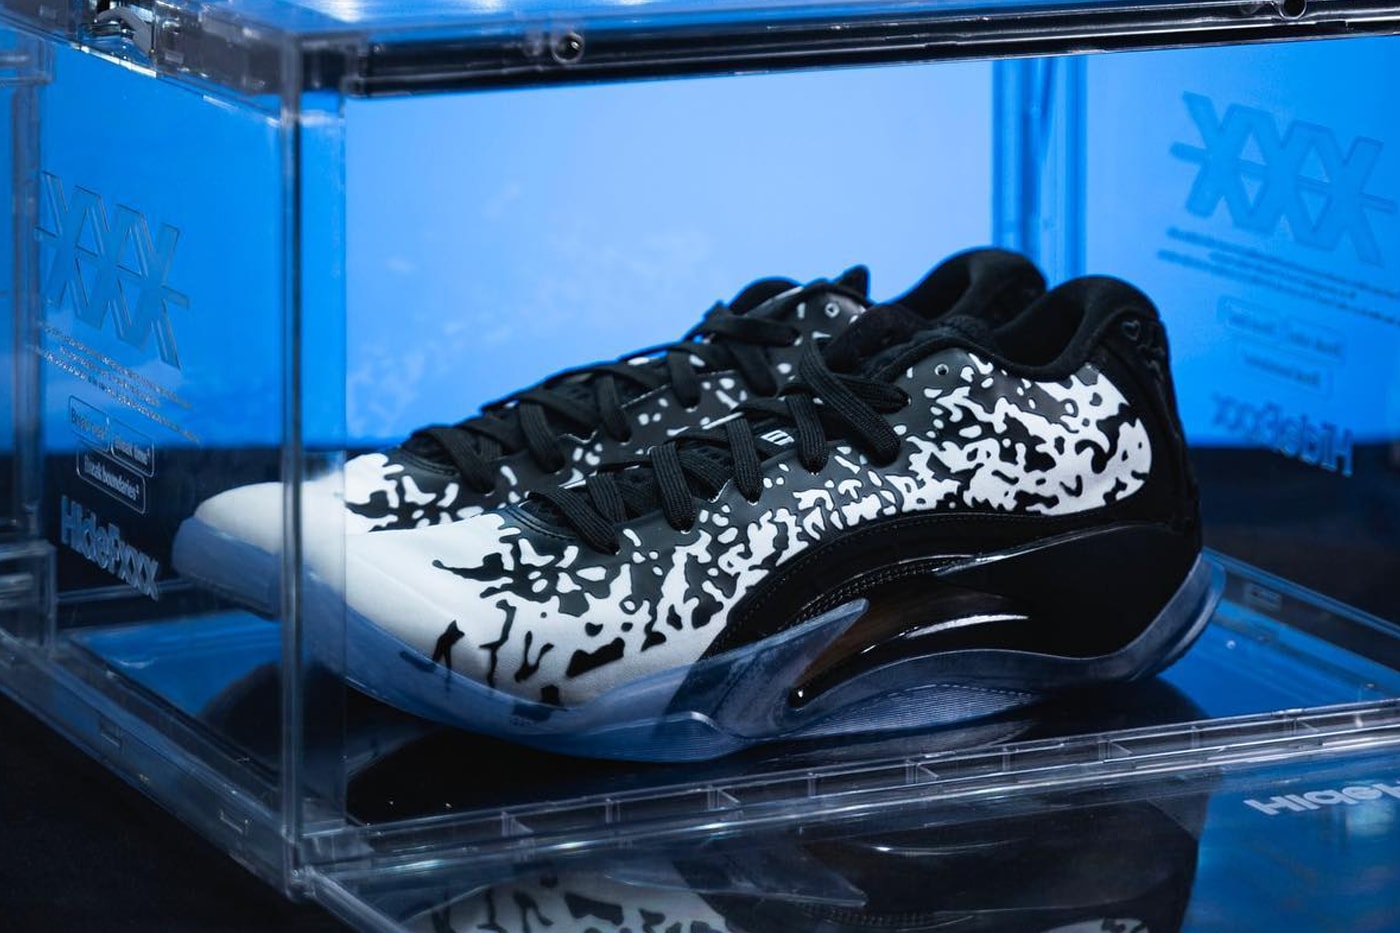 How to Style the Air Jordan 1 'Brotherhood' - Sneaker Freaker